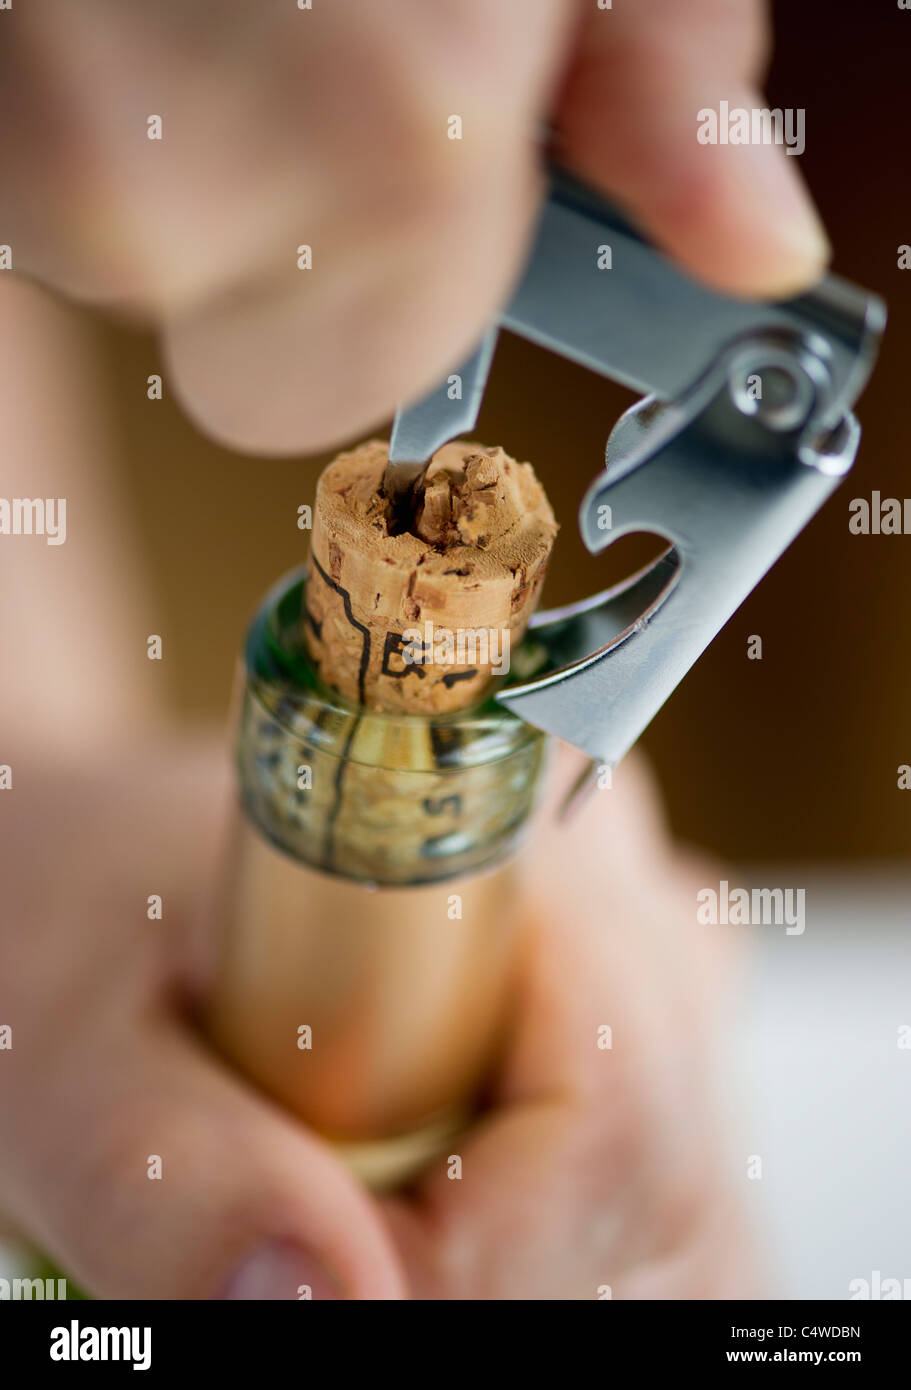 Close-up of man's hands ouvrir bouteille de vin Banque D'Images